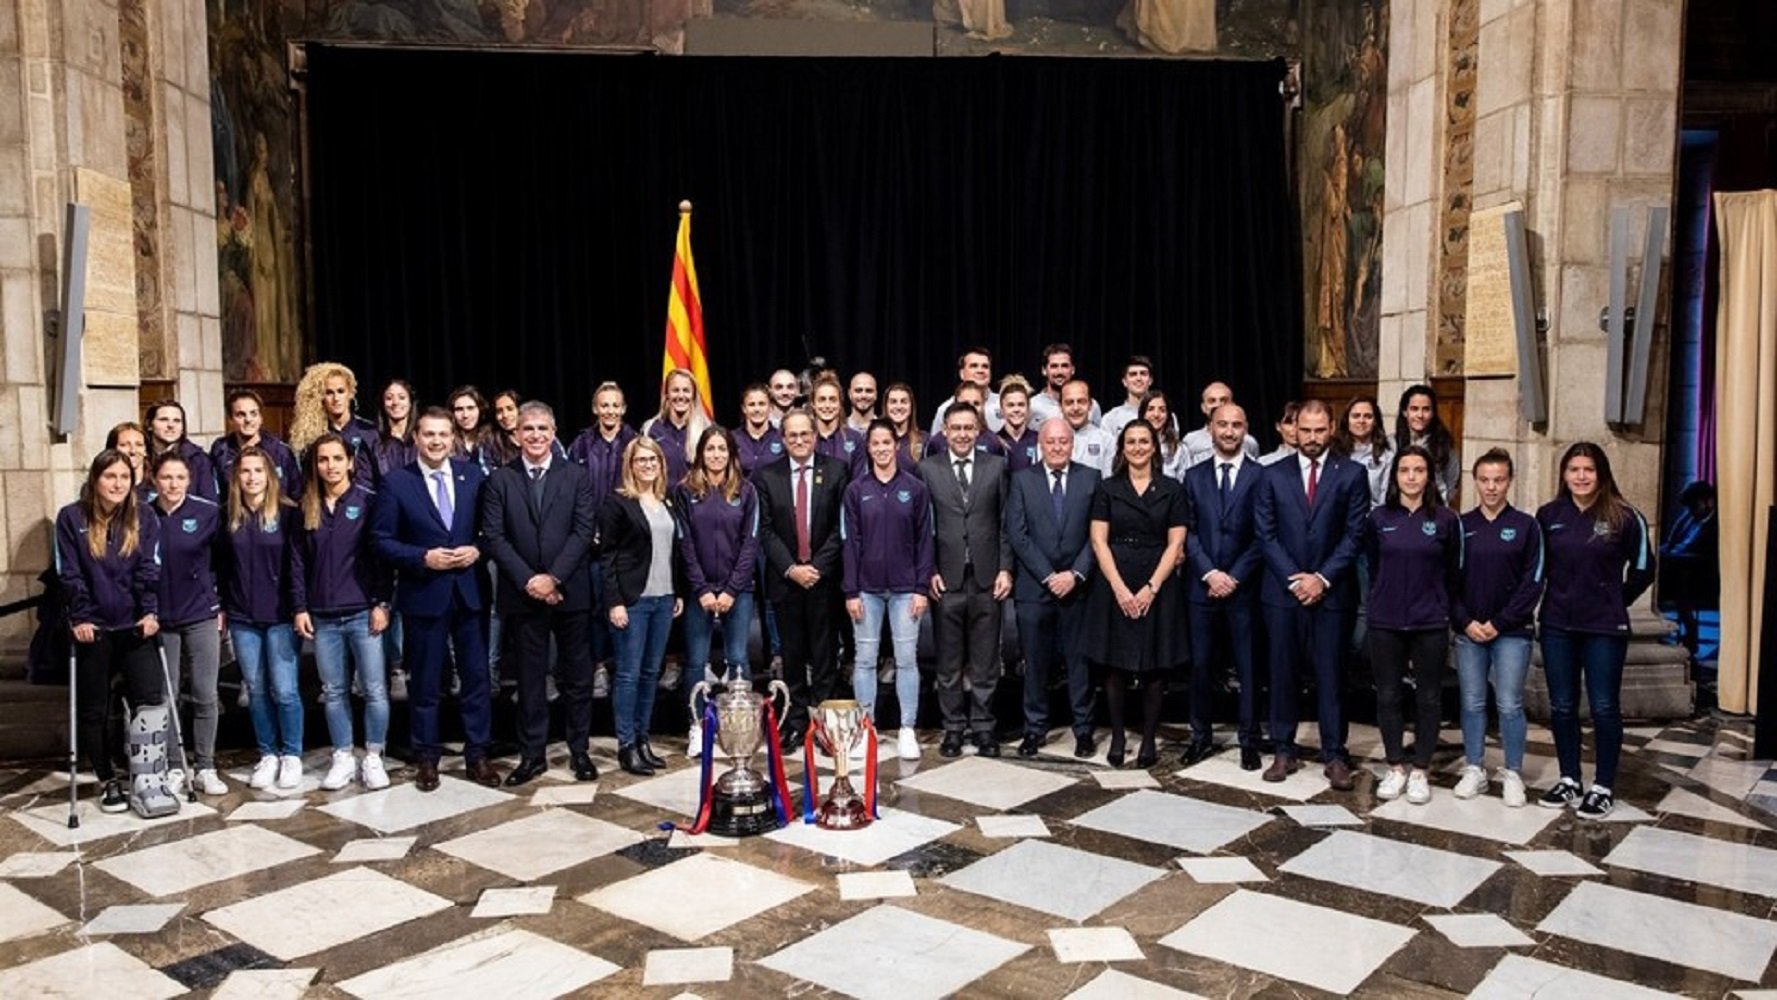 El Barça femení, rebut al Palau de la Generalitat per primera vegada en la història